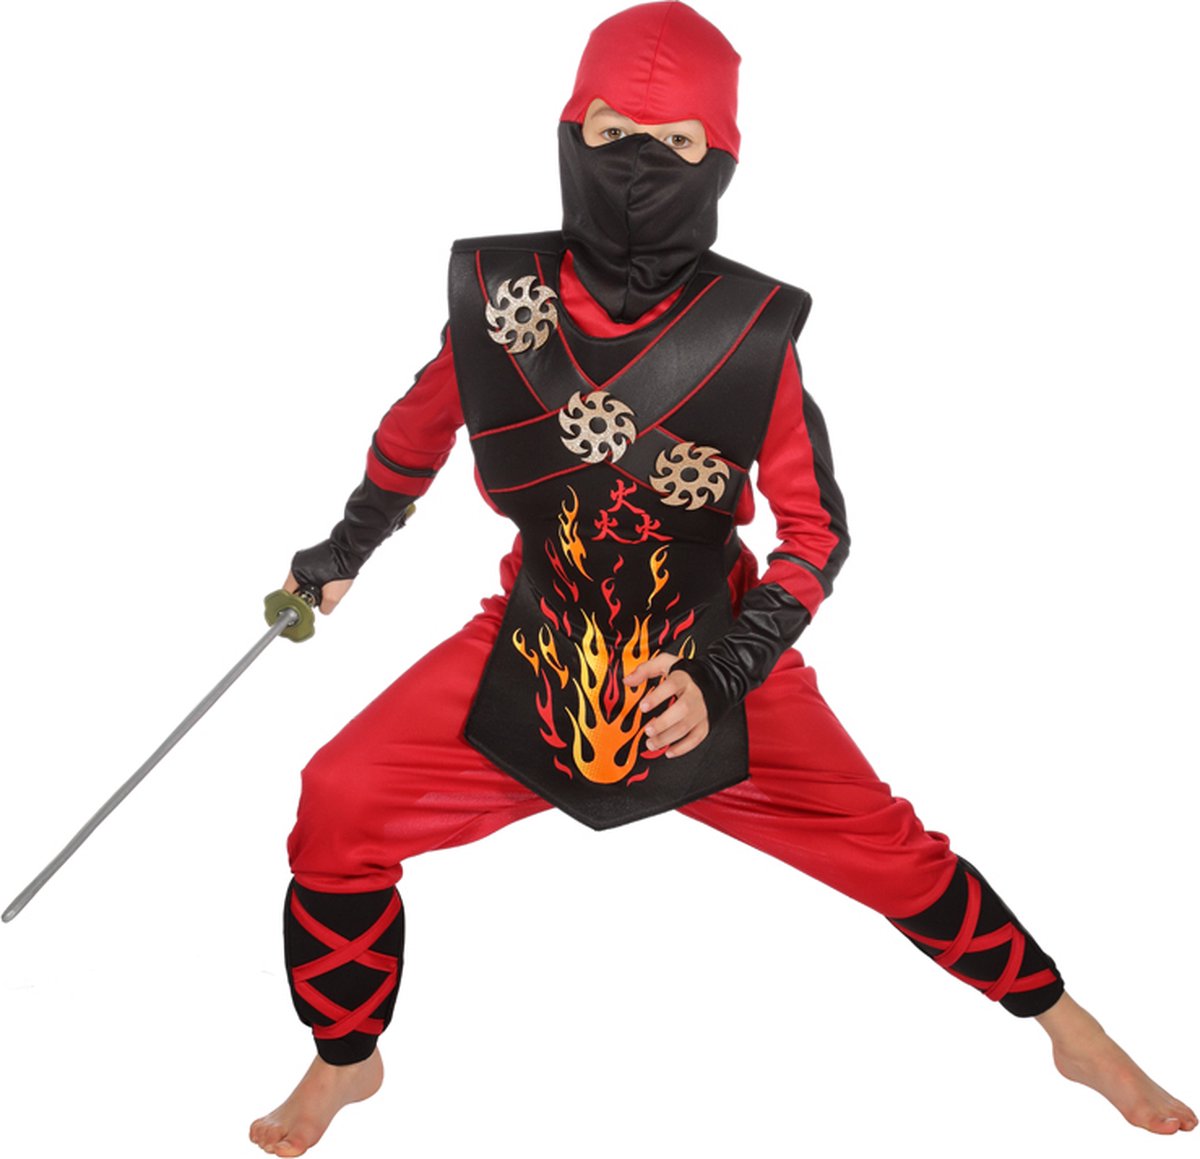 Wilbers & Wilbers - Ninja & Samurai Kostuum - Vurige Rode Ninja Strijder Met Werpsterren Kind Kostuum - Rood - Maat 116 - Carnavalskleding - Verkleedkleding